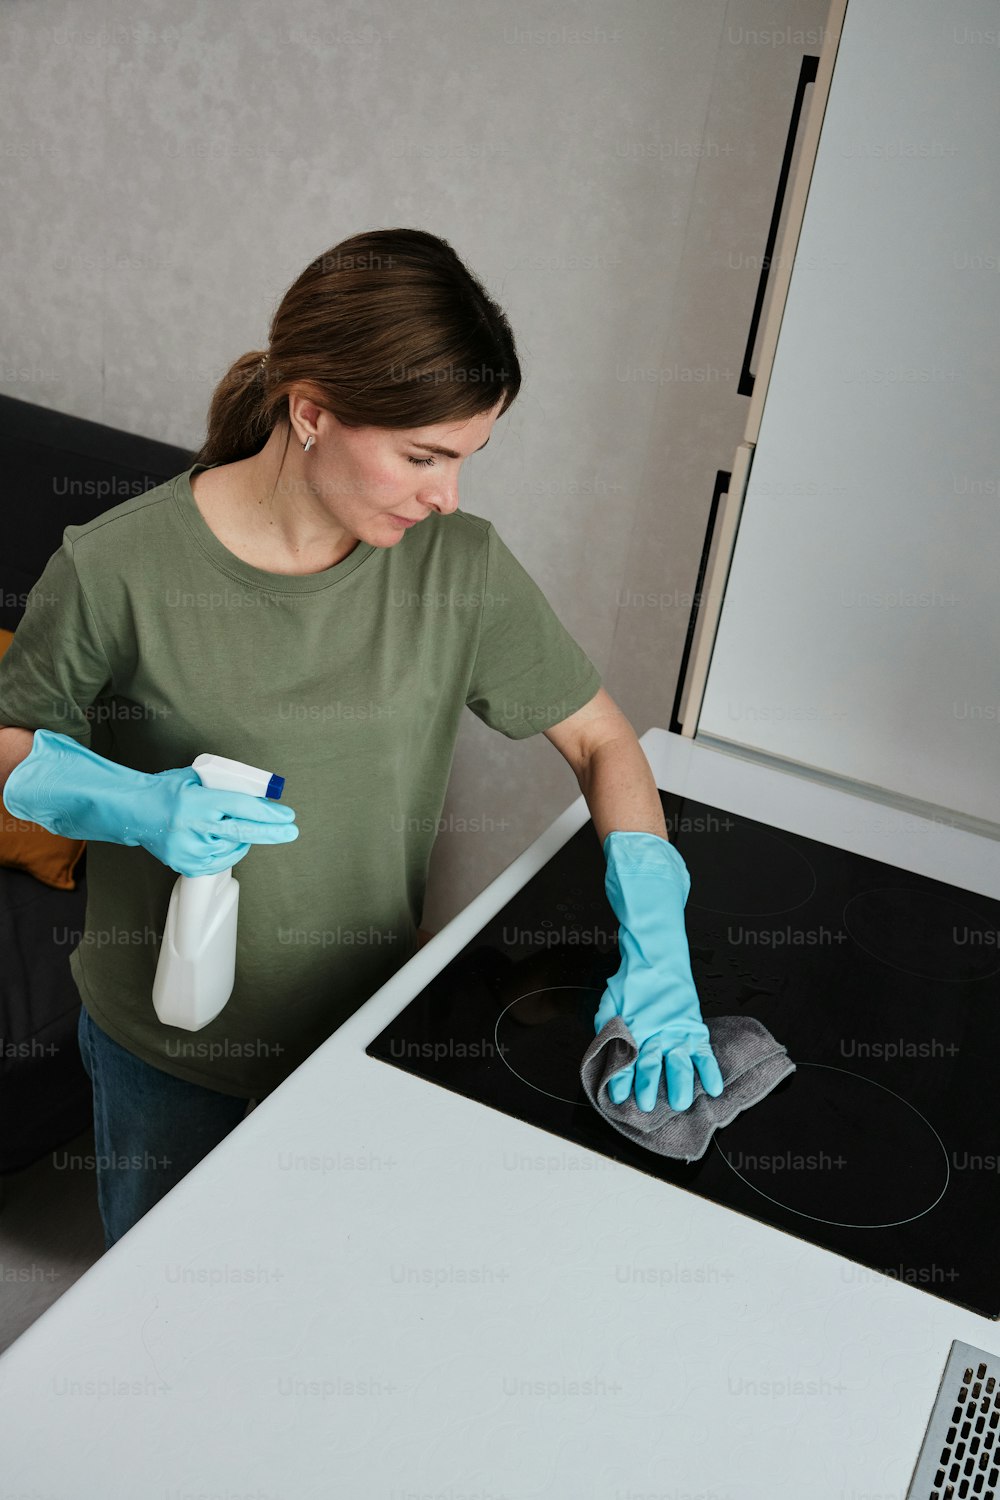 Eine Frau in grünem Hemd und blauen Handschuhen putzt einen Ofen